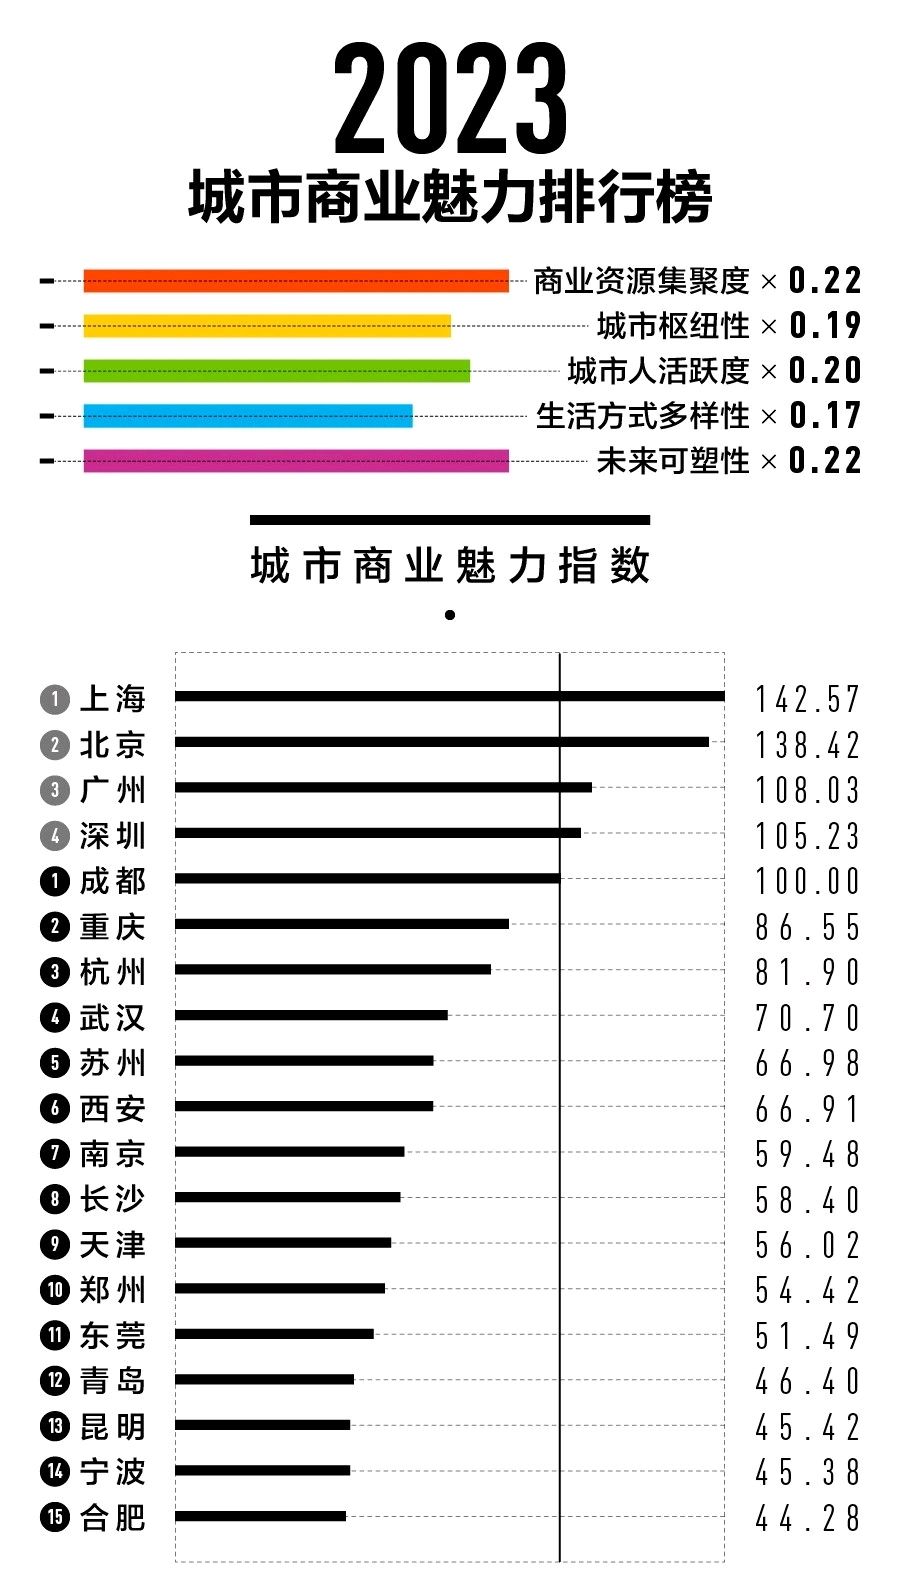 2023全国15个新一线城市排名:成都第1,杭州远超苏州,昆明第13